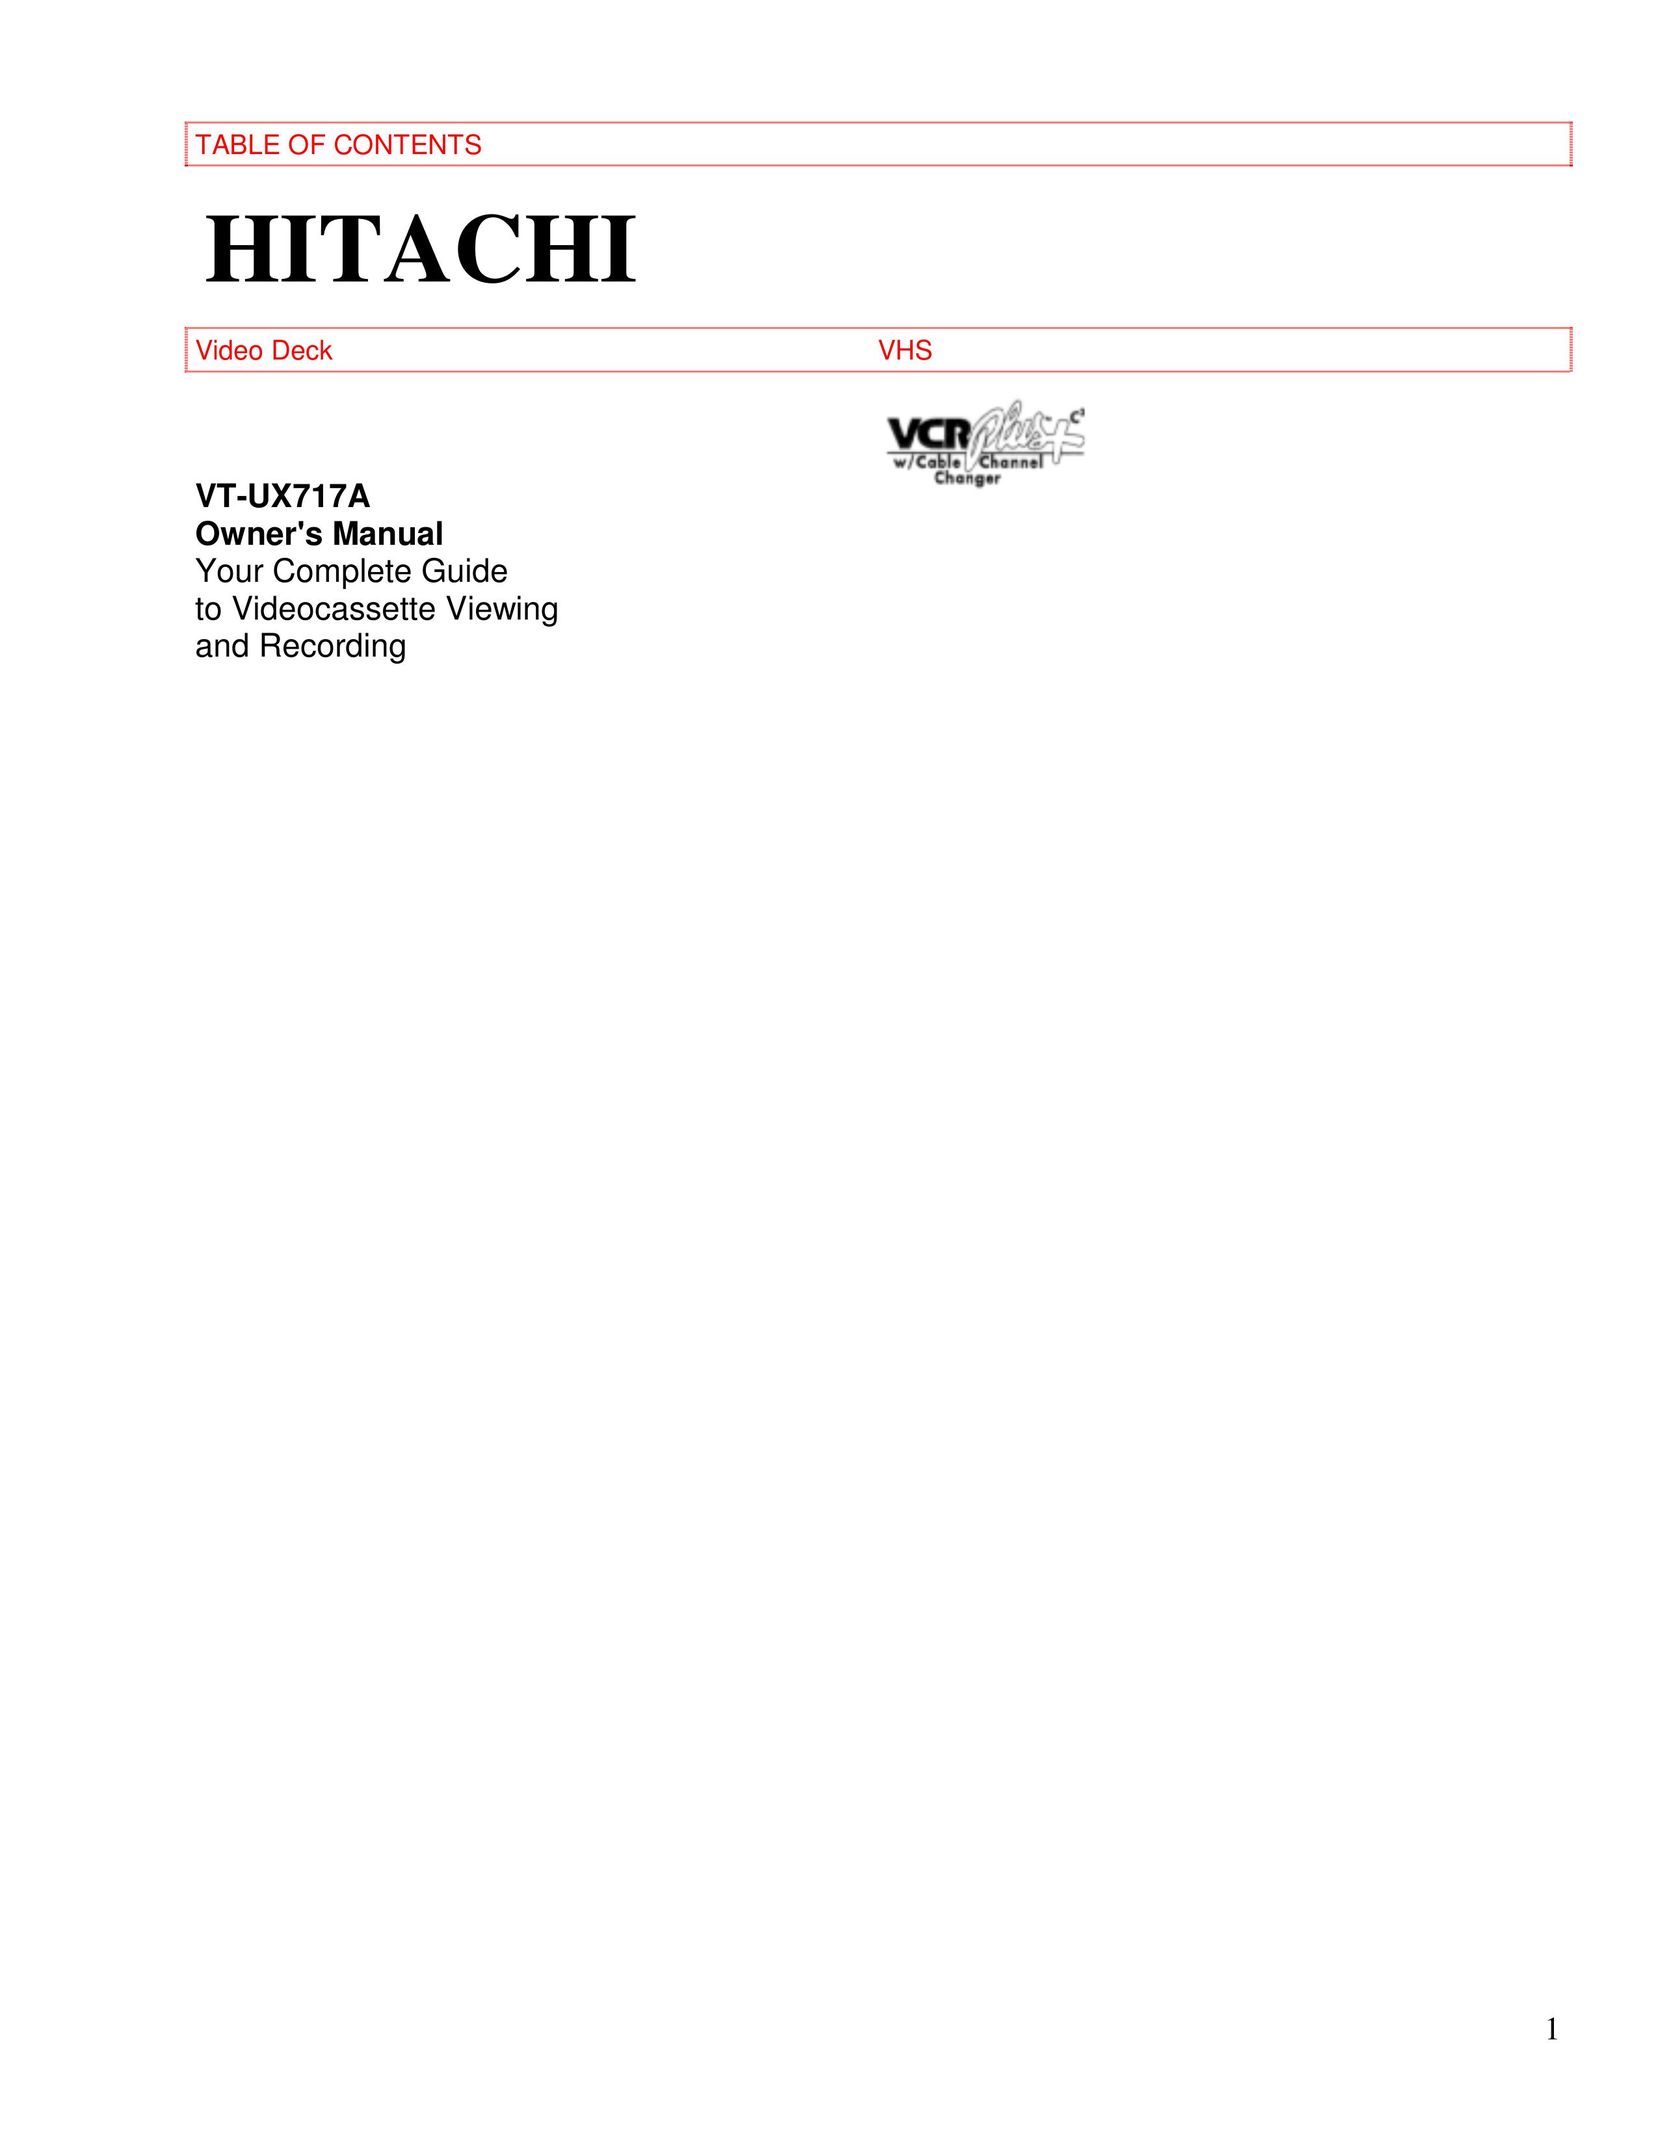 Hitachi VT-UX717A VCR User Manual